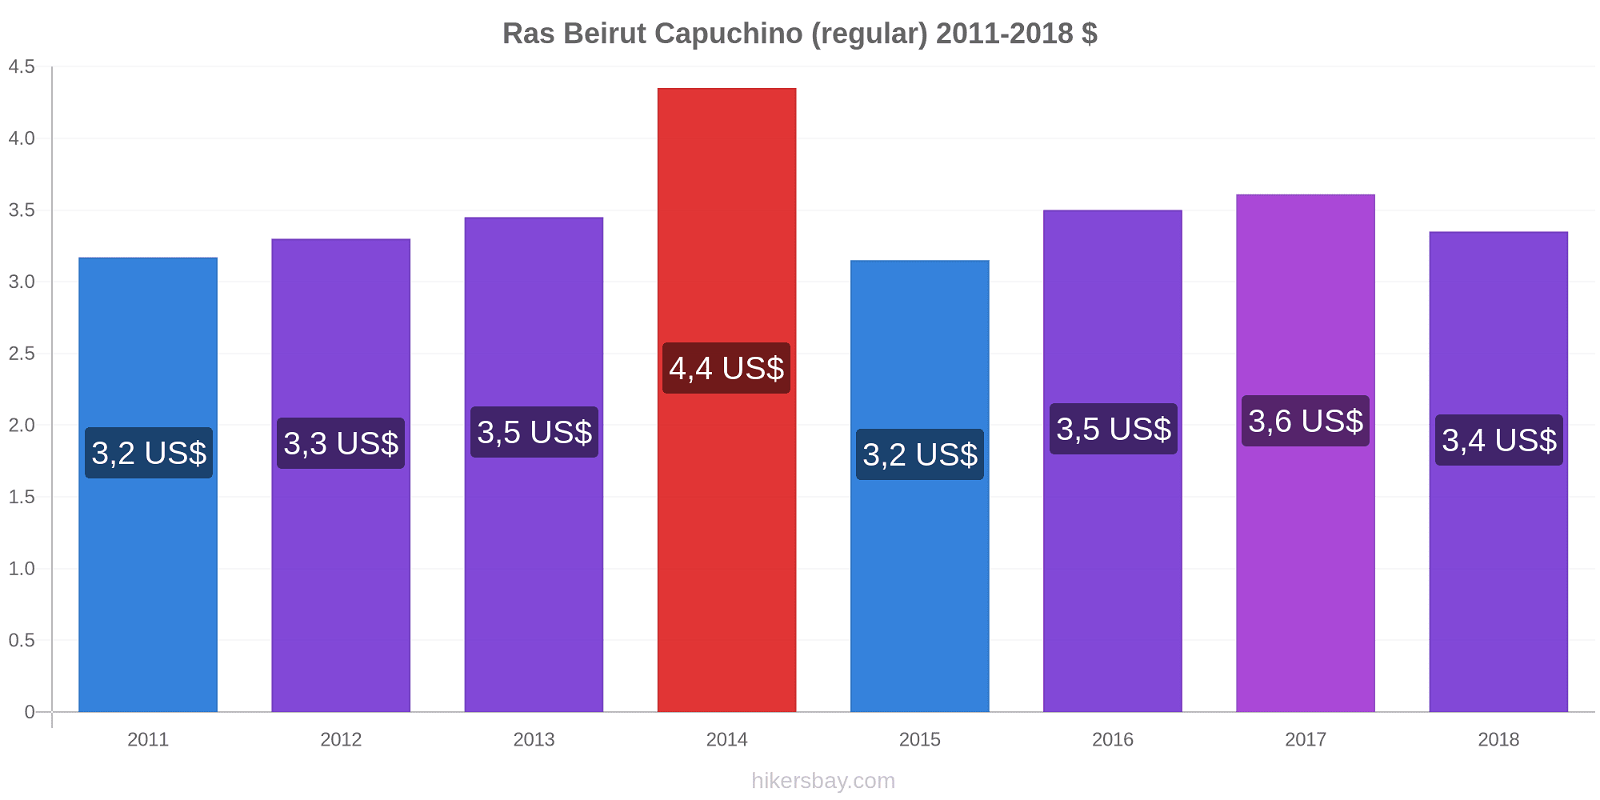 Ras Beirut cambios de precios Capuchino (regular) hikersbay.com